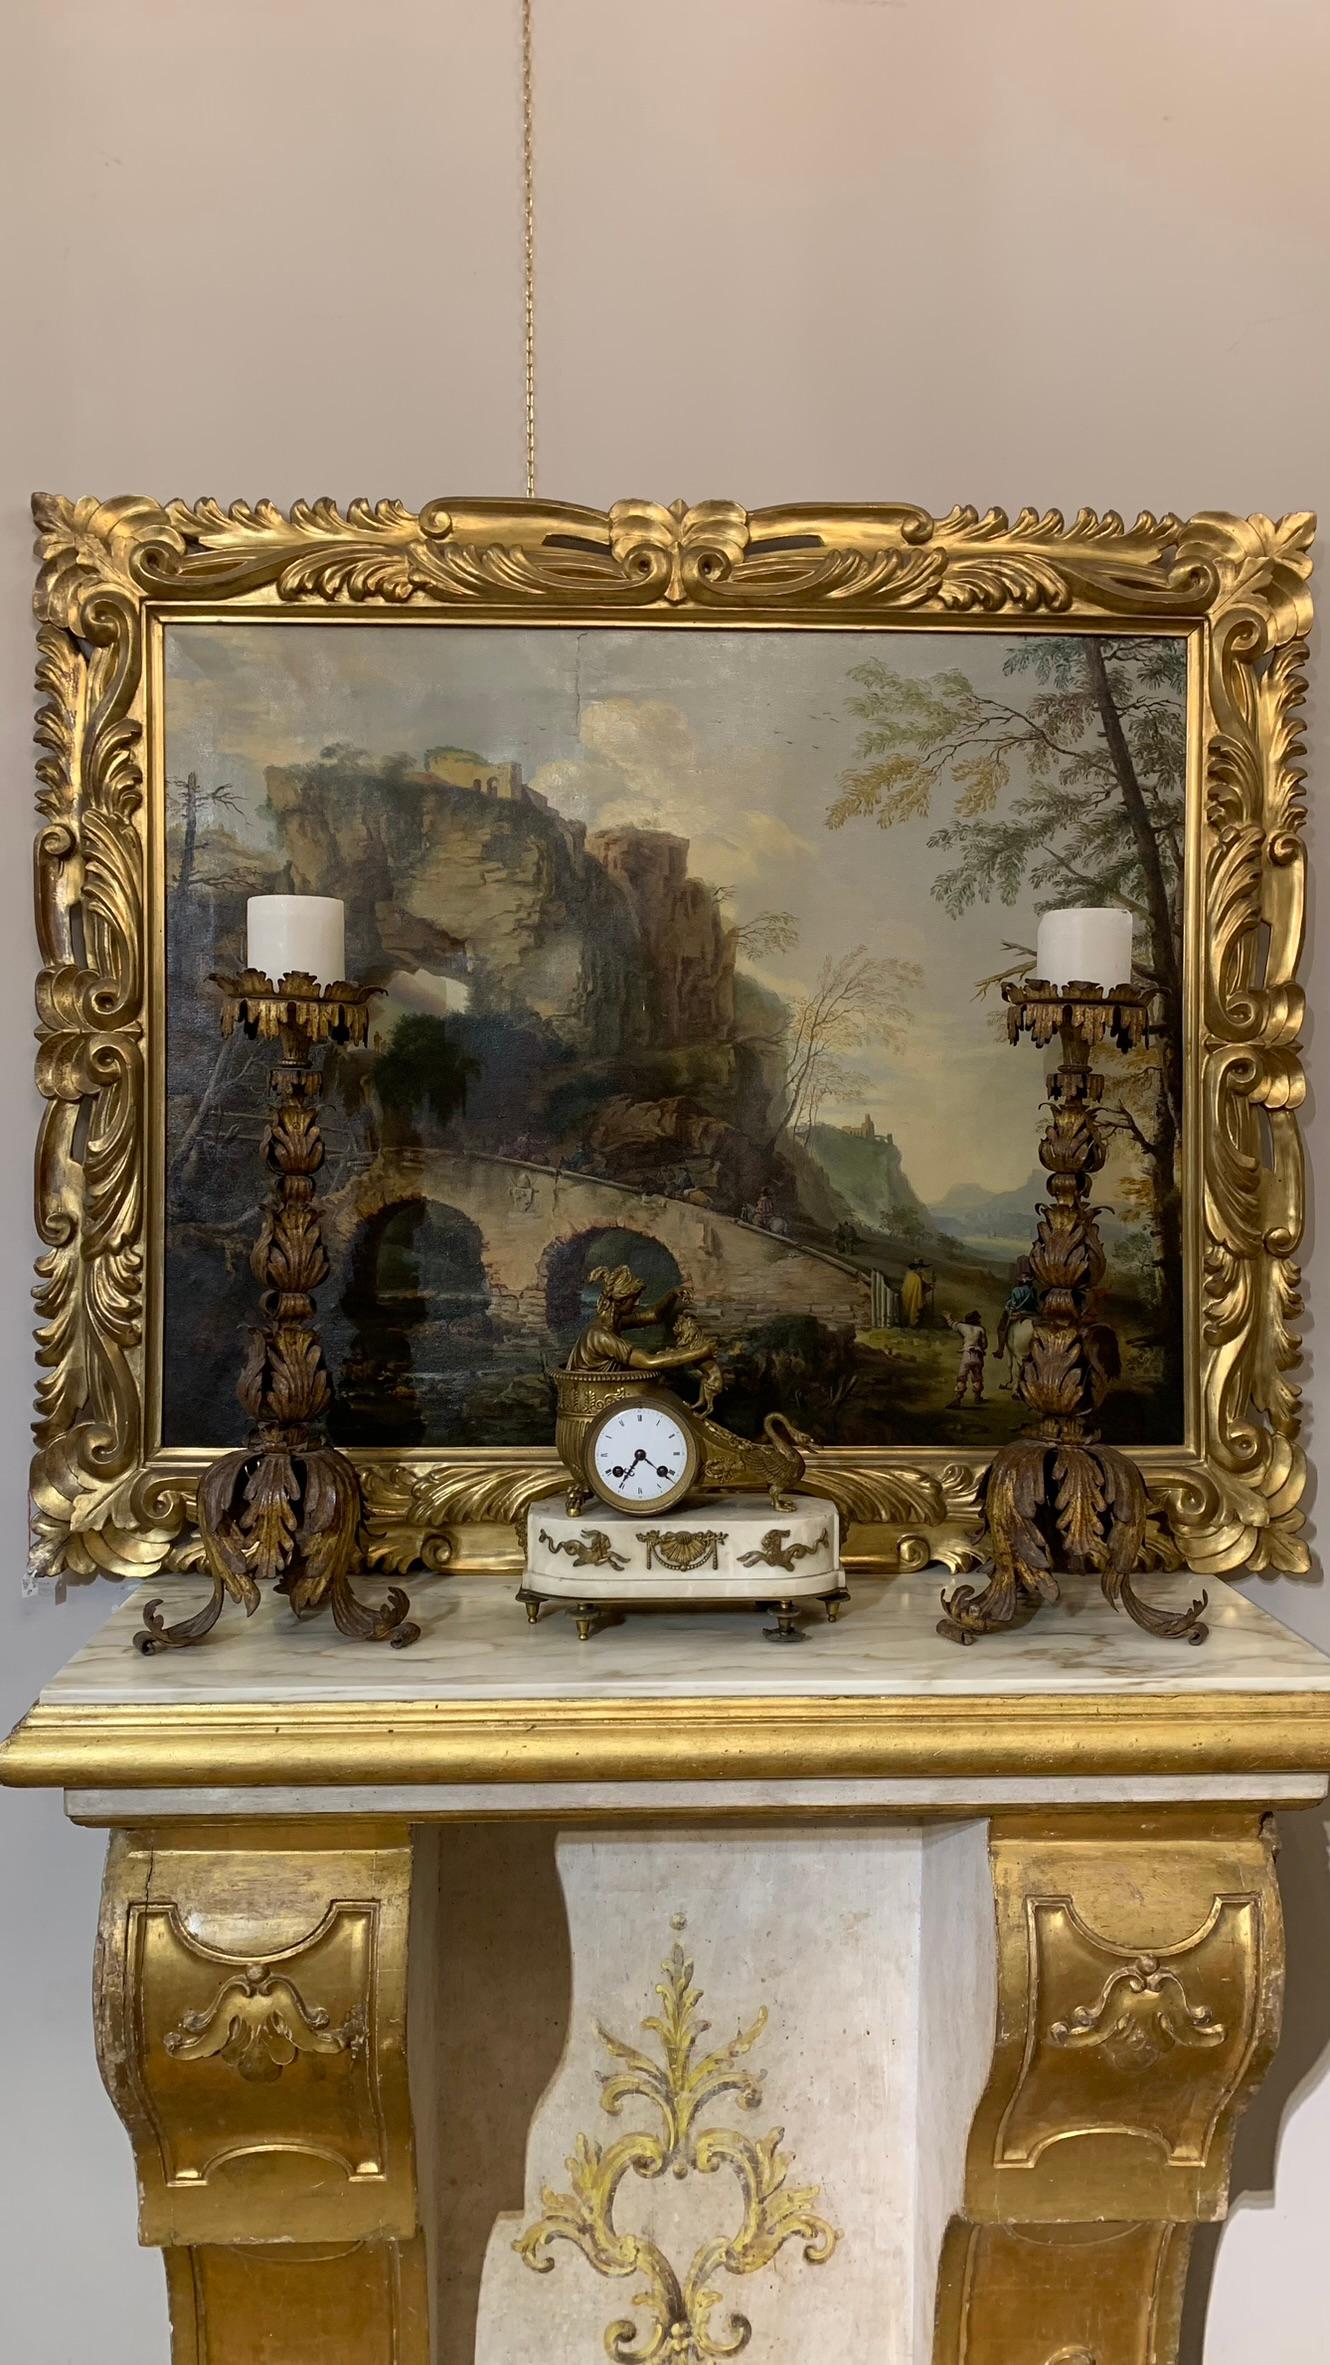 Raffinierte neoklassische Uhr aus vergoldeter Bronze und Marmorsockel. Der Korpus besteht aus einer klassischen Darstellung mit einem vergoldeten Bronzewagen und einem Schwanenkopf, in dem ein drapiertes Mädchen sitzt, das mit einem Hund spielt. Der